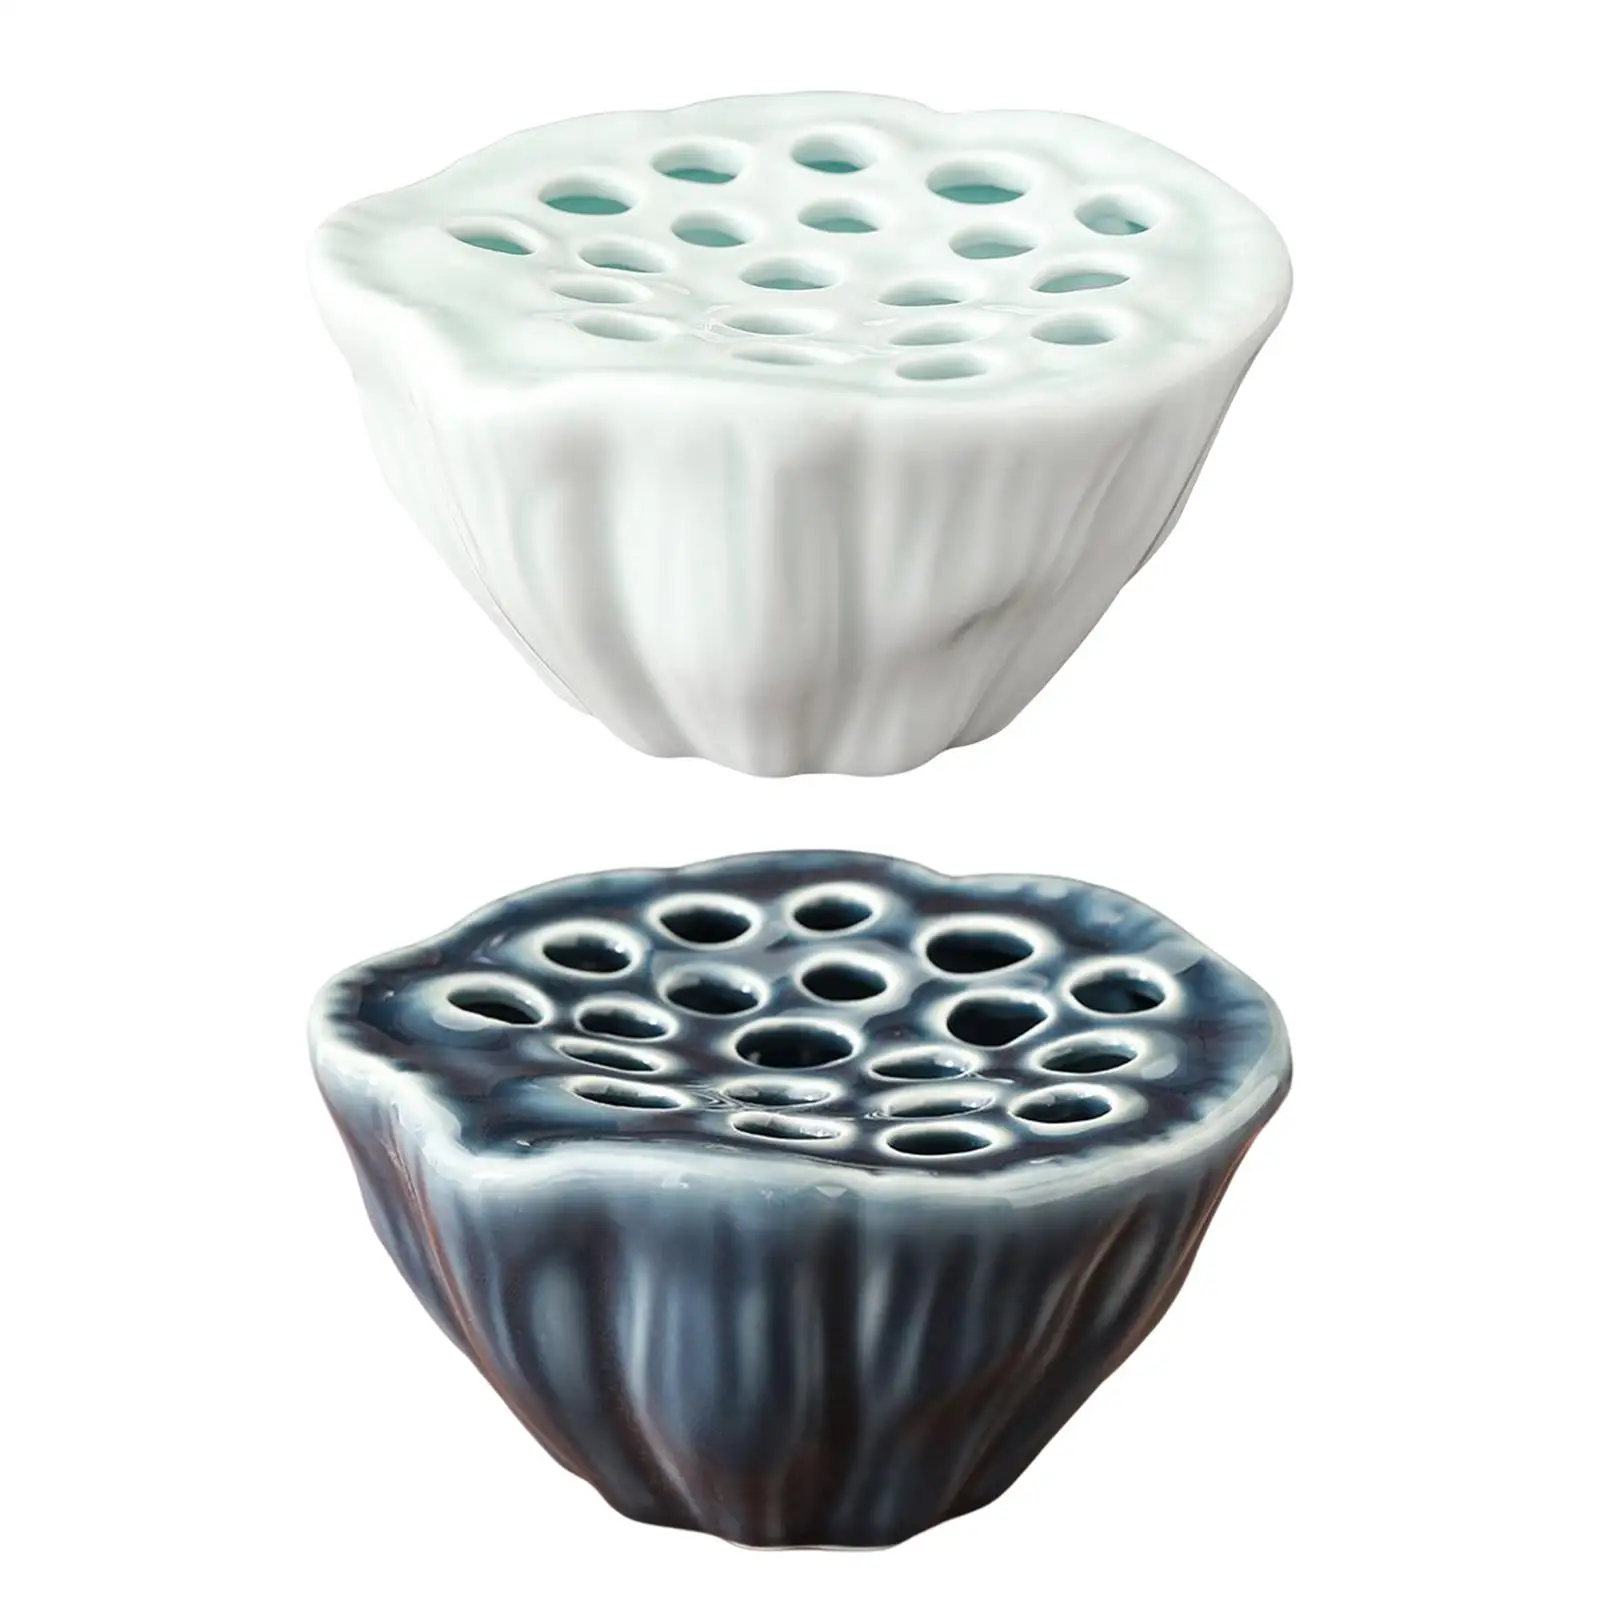 Lotus Pod Shaped Flower Vase Planter Pot Ceramic Flower Pot for Shelf Desk